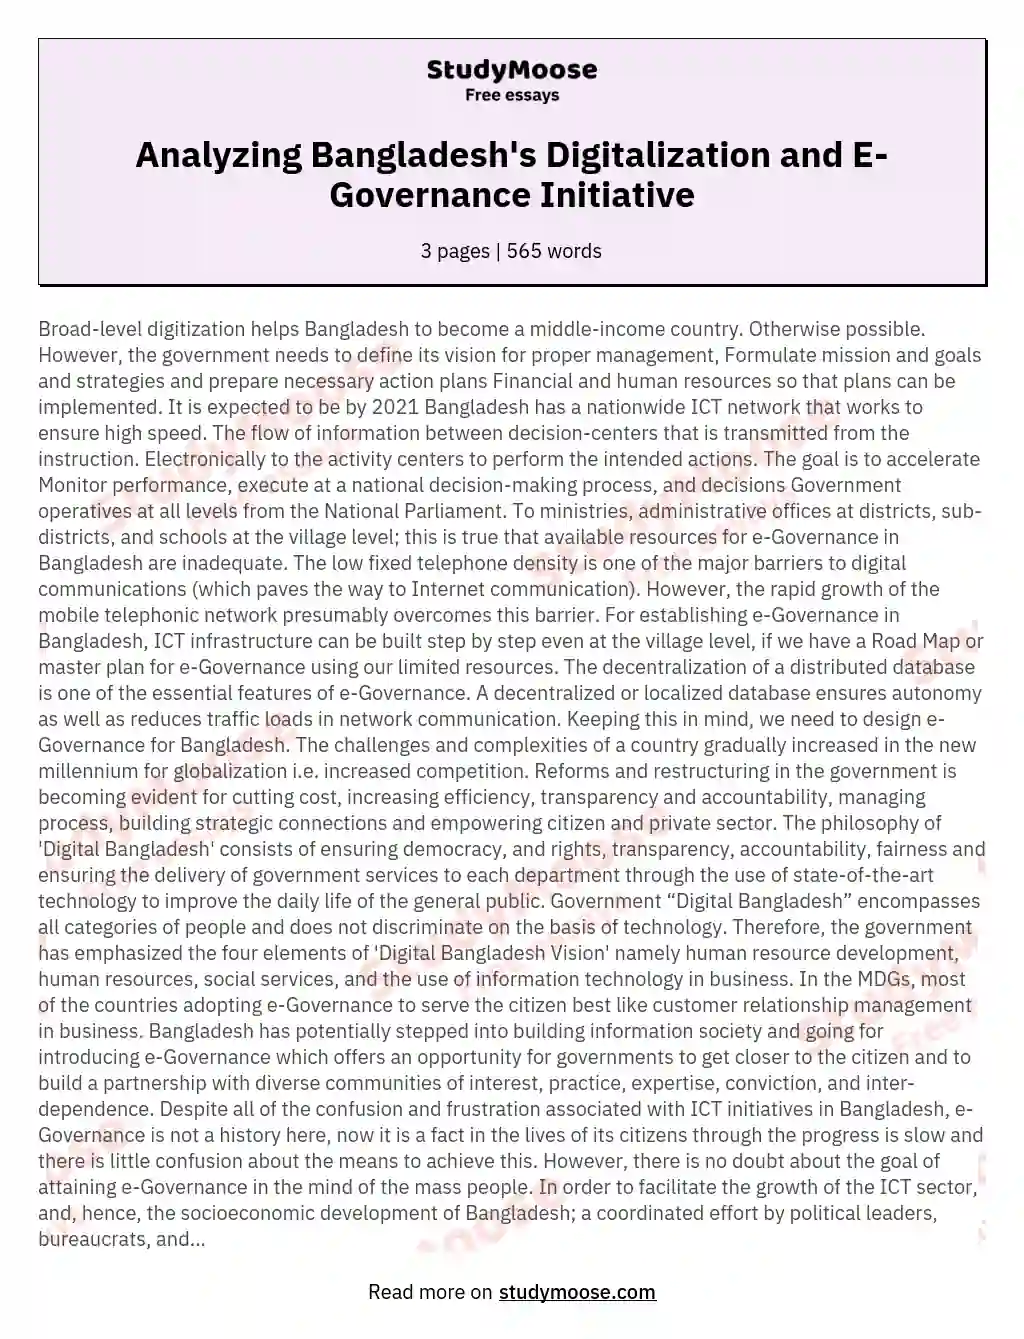 E-Governance Initiative and the Concept of ‘Digital Bangladesh’: A Critical Analysis